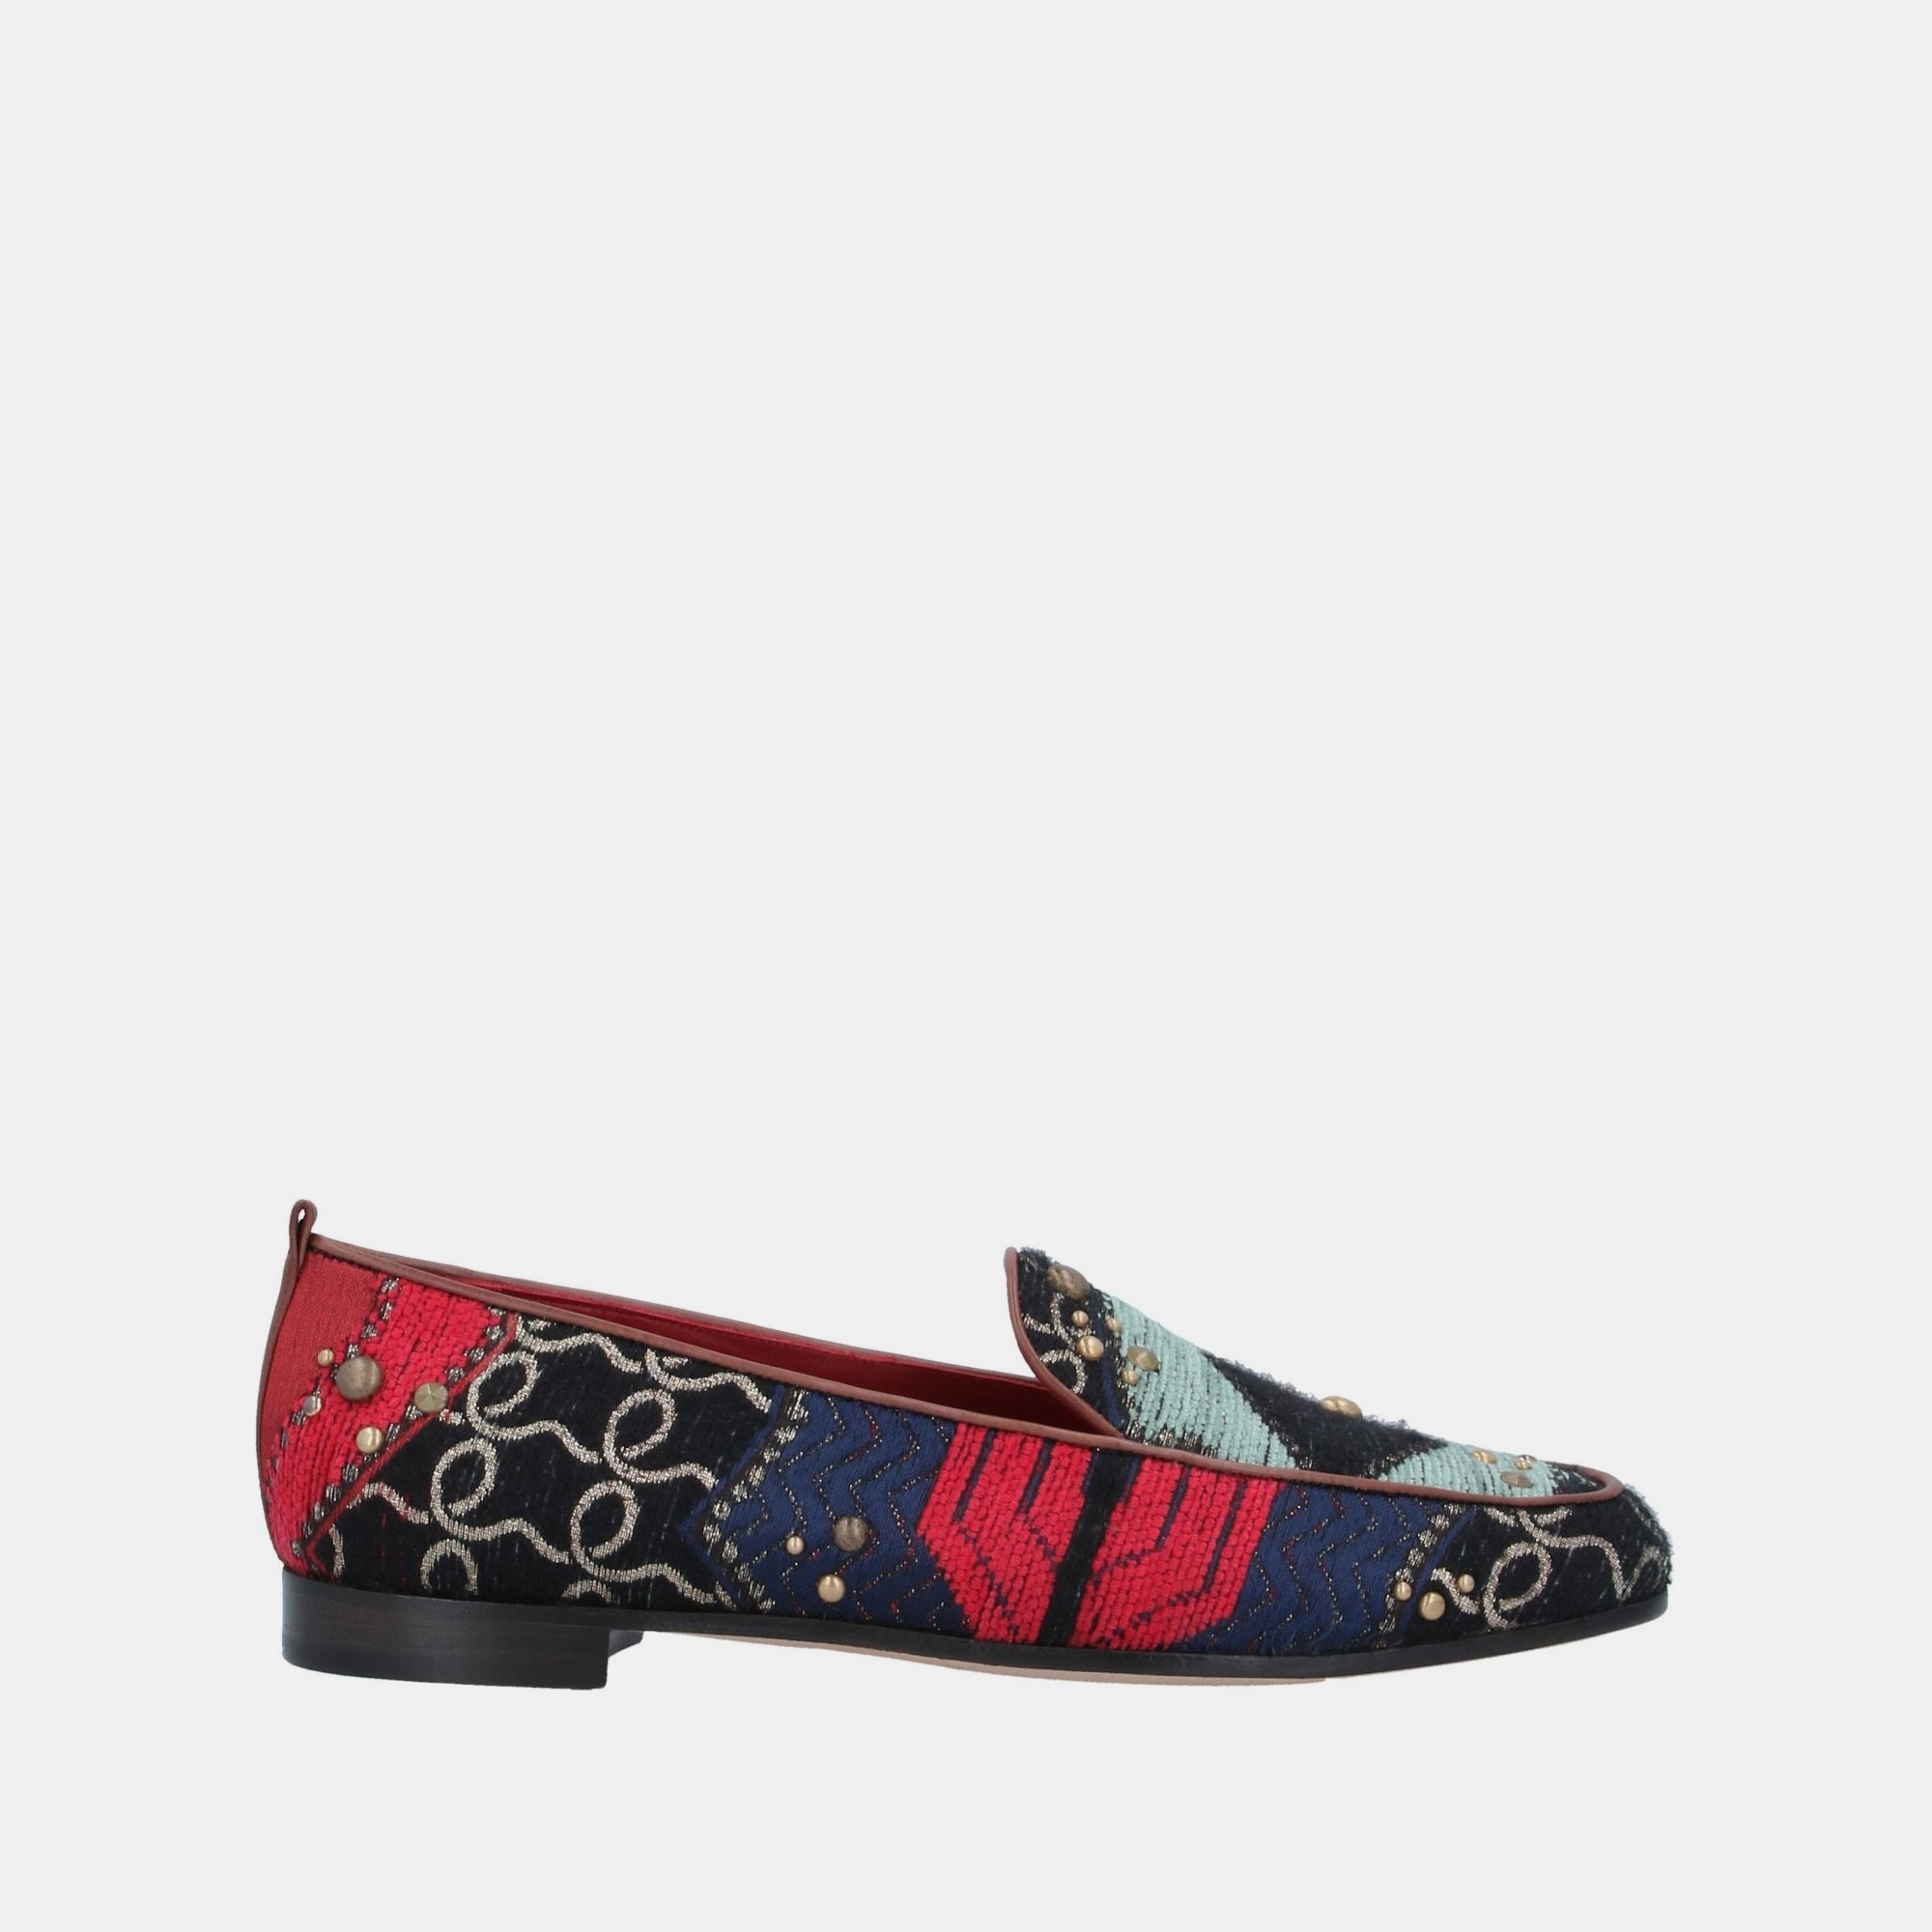 Giorgio armani multicolor fabric loafers size 36